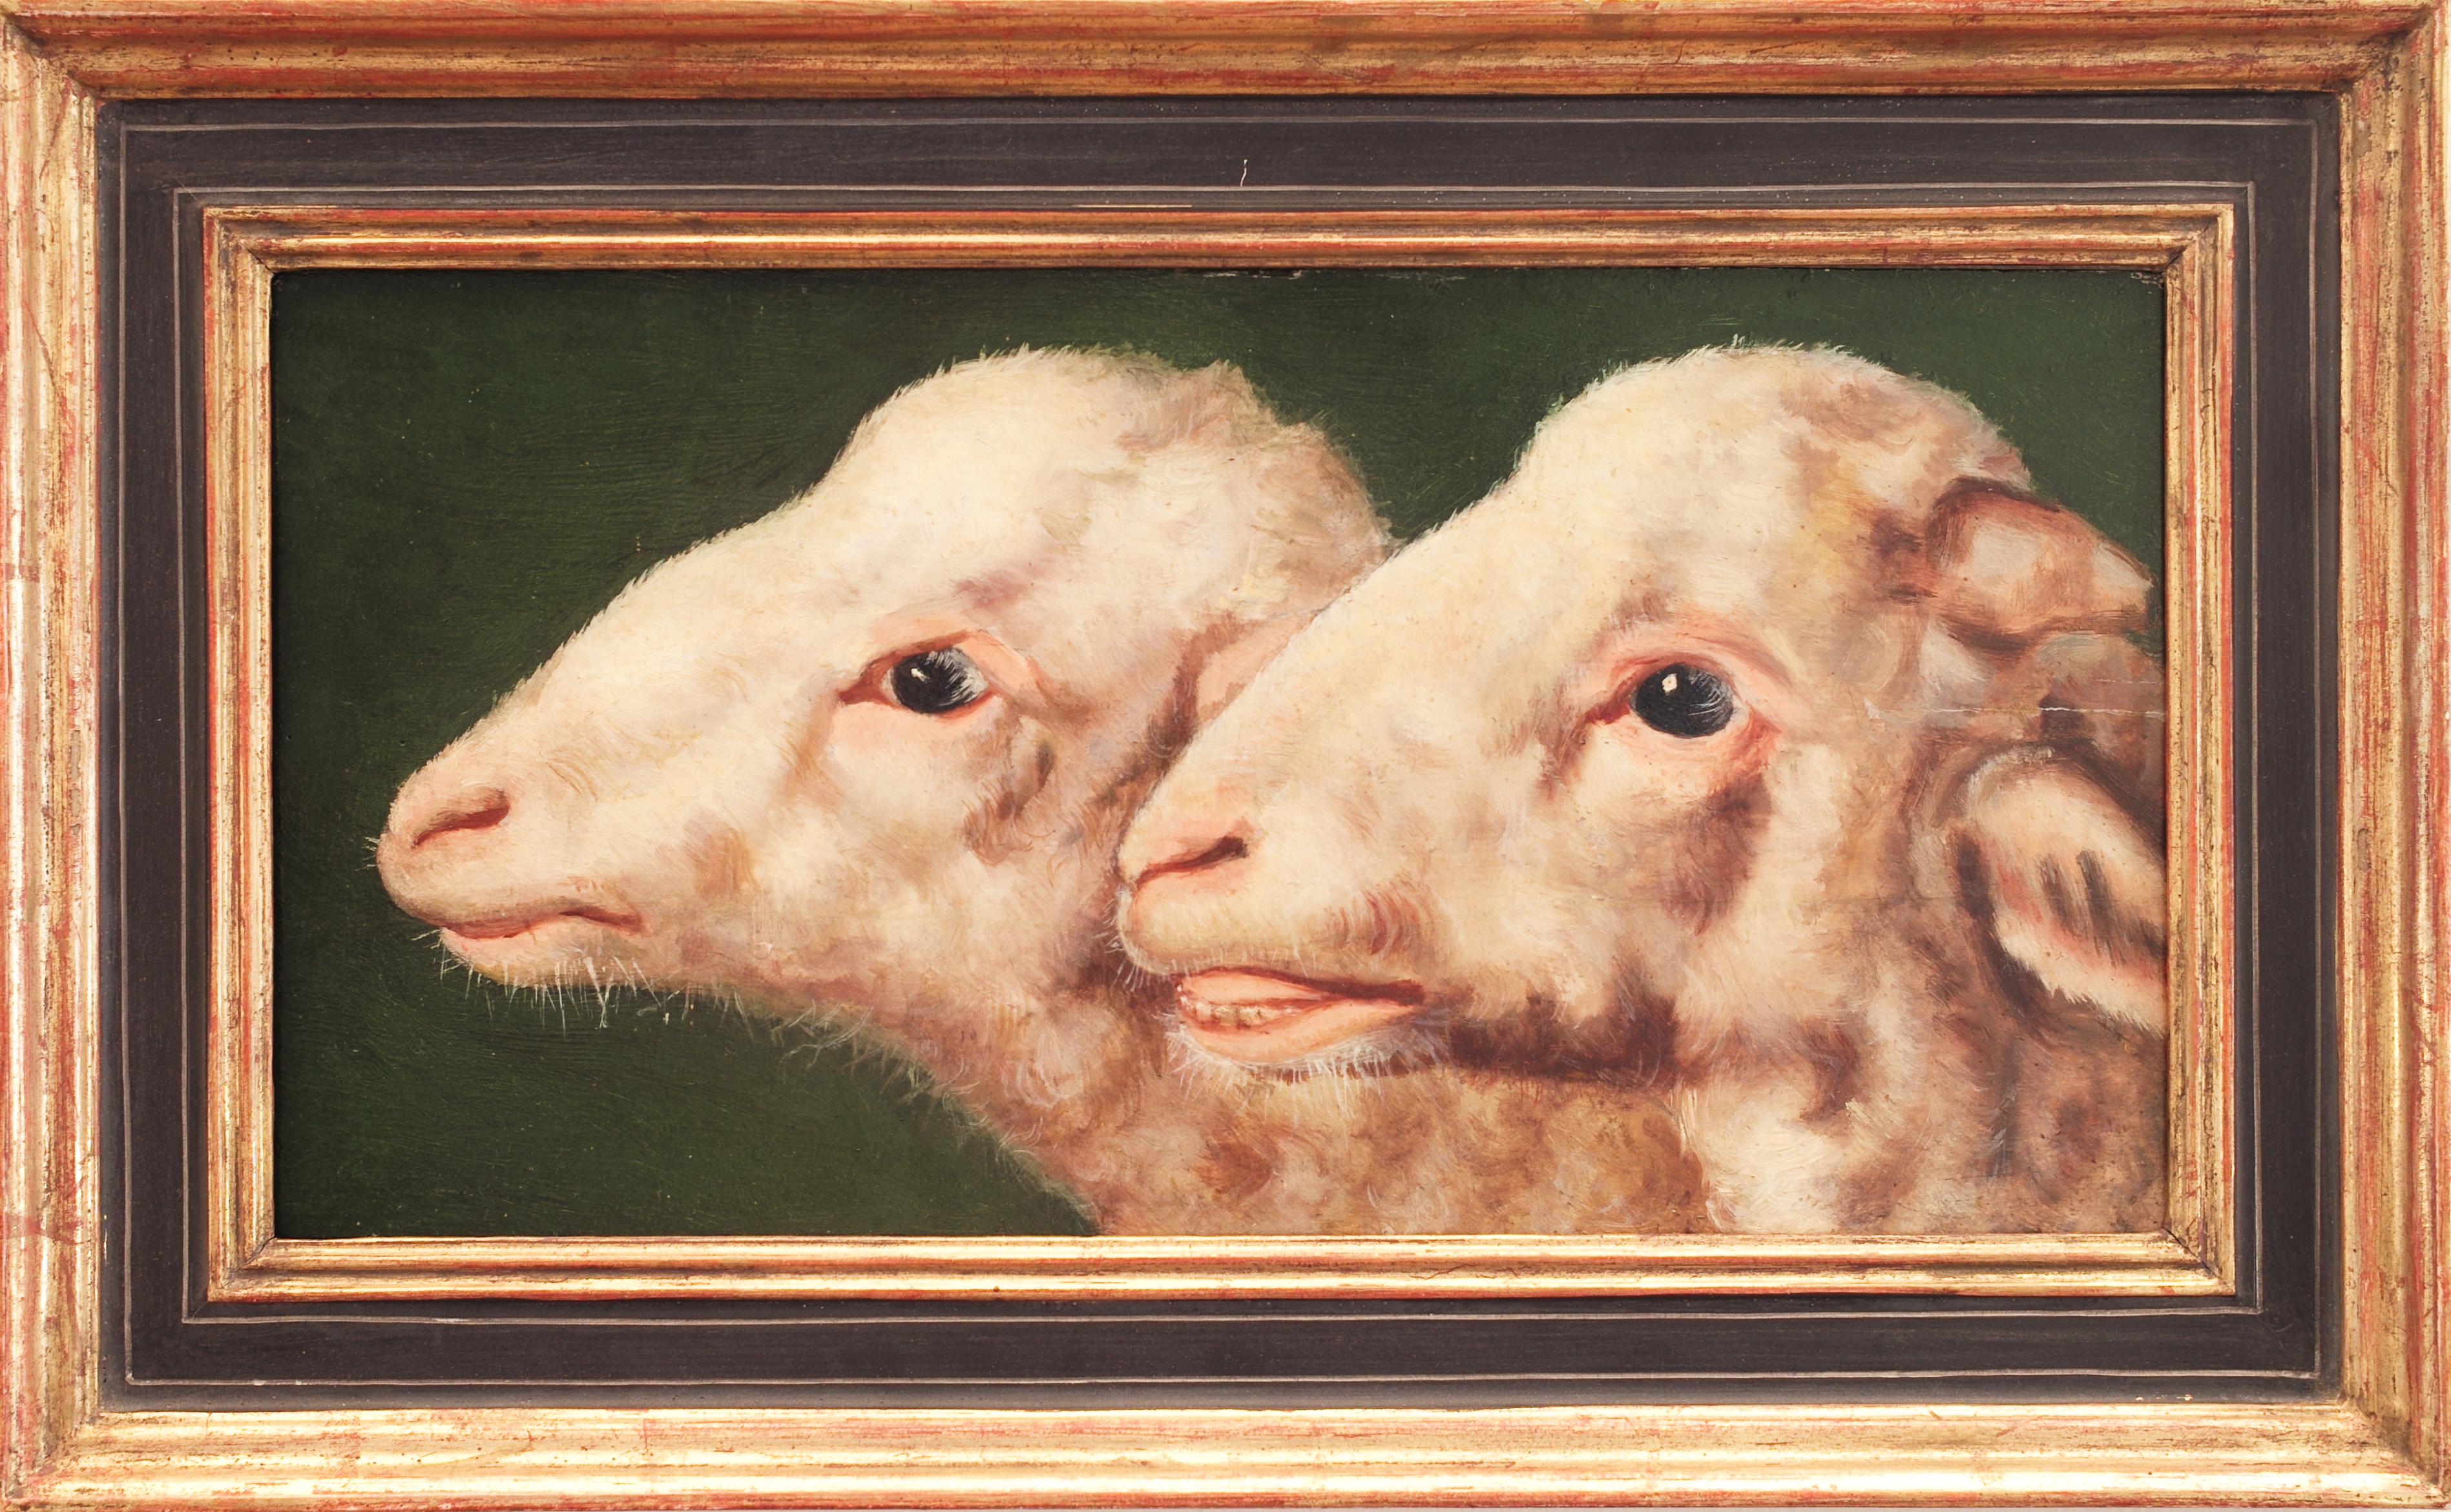 2 sheep's heads